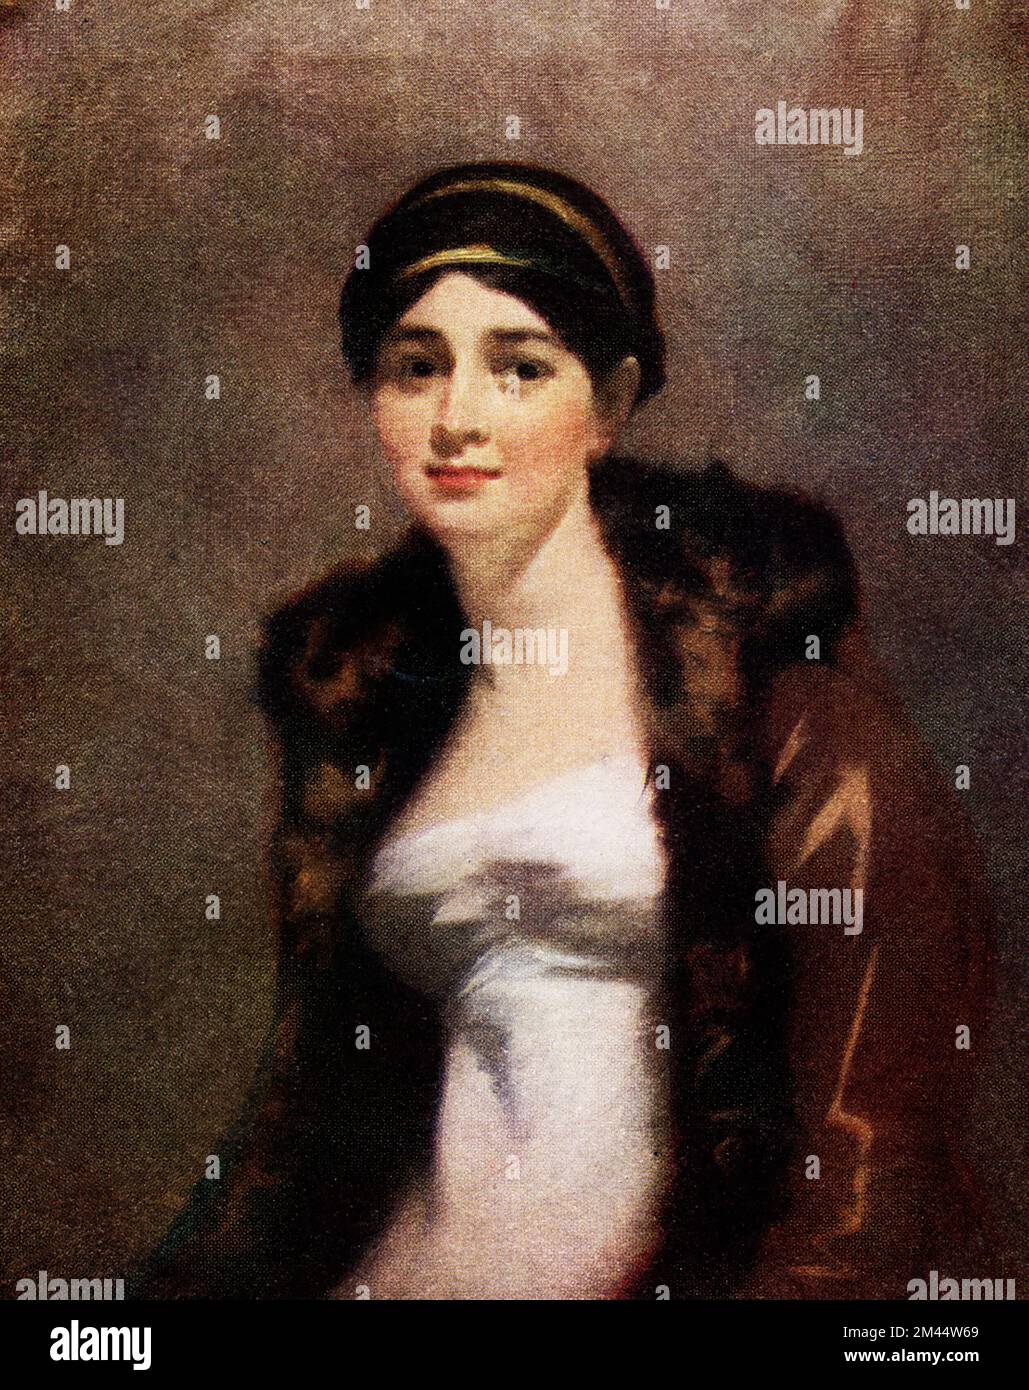 Die Bildunterschrift für dieses Bild, das um 1910 geschrieben wurde, lautet: "Miss Emily de Vismes - Lady Murray von Raeburn (1756-1823), ein bewundernswertes Beispiel für den reifen Stil der Künstler und eines seiner bezauberndsten Frauenporträts." Sir Henry Raeburn (1756-1823) war ein schottischer Porträtmaler. Er diente als Porträtmaler für König George IV. In Schottland. Stockfoto